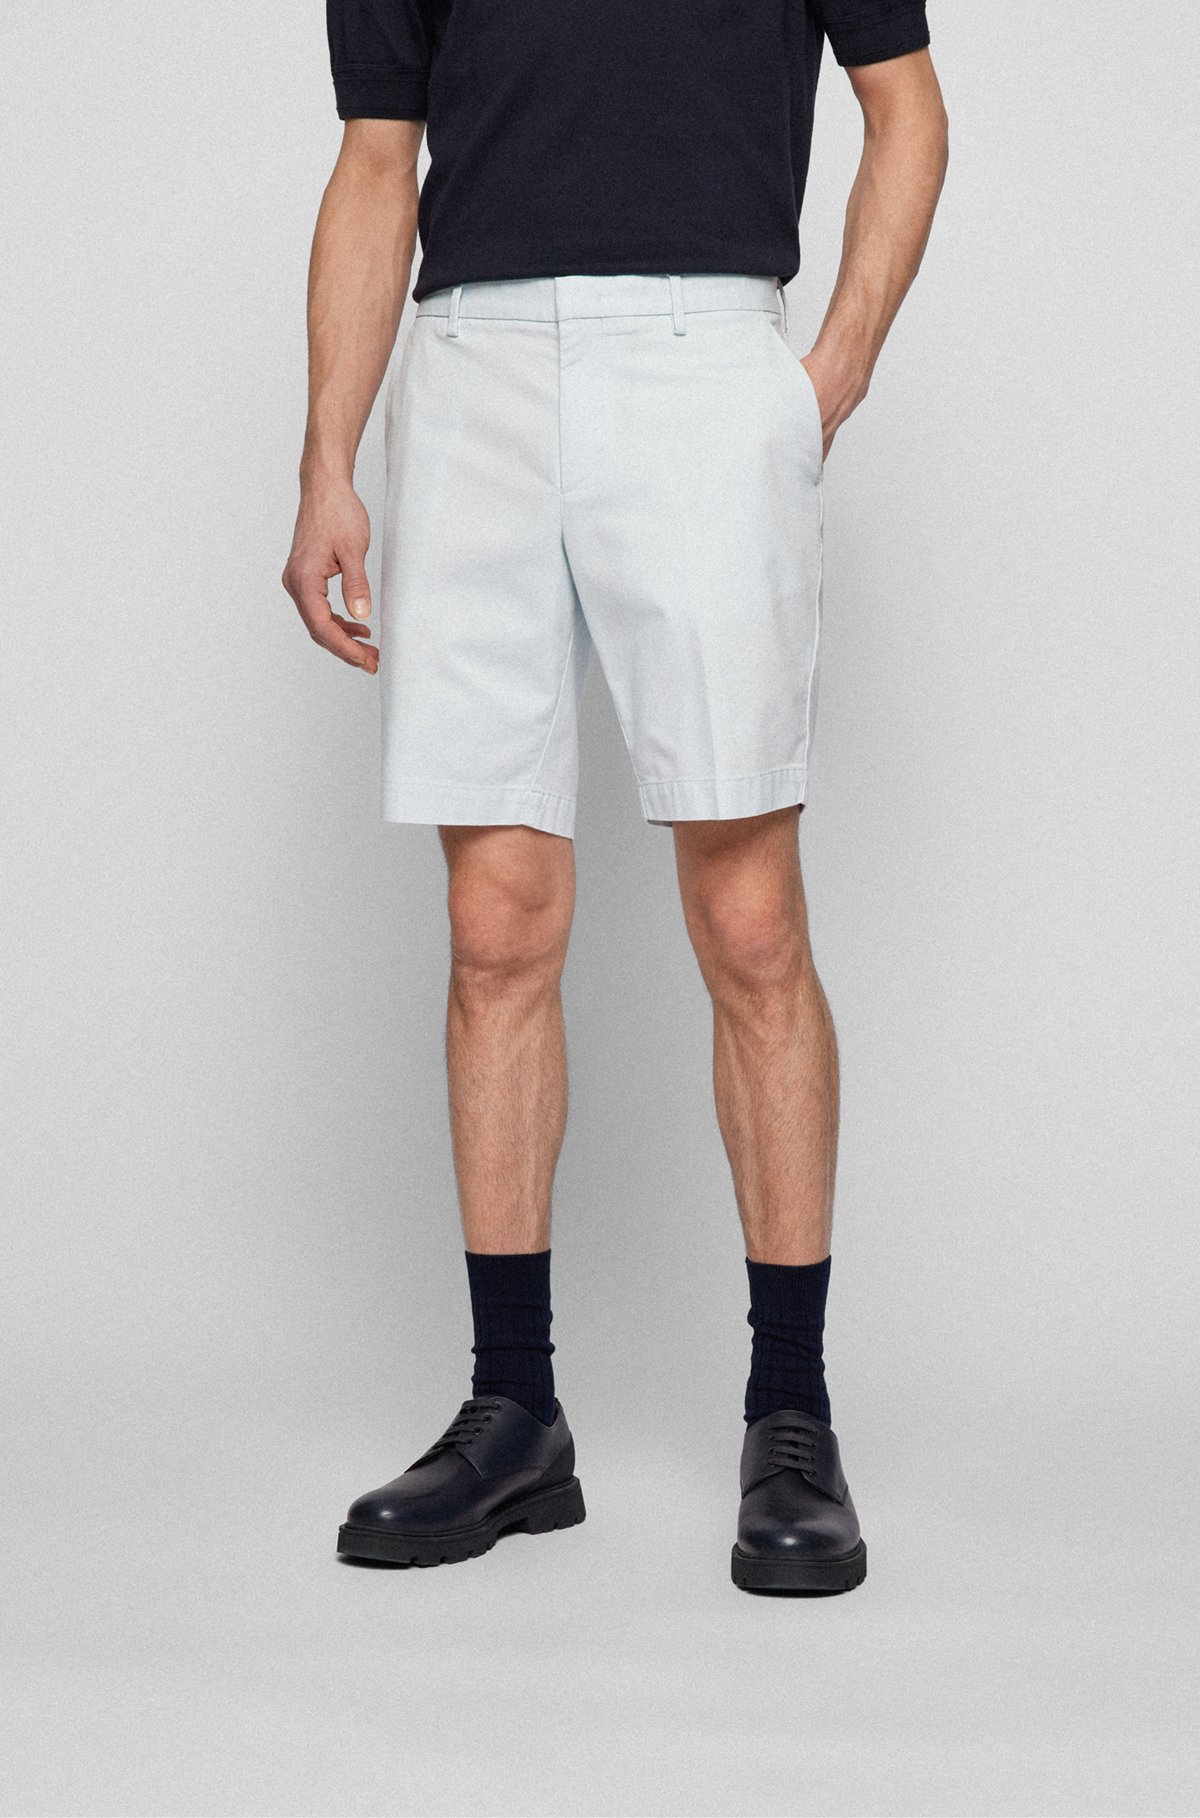 Shorts slim fit de algodón elástico con estructura, Cal